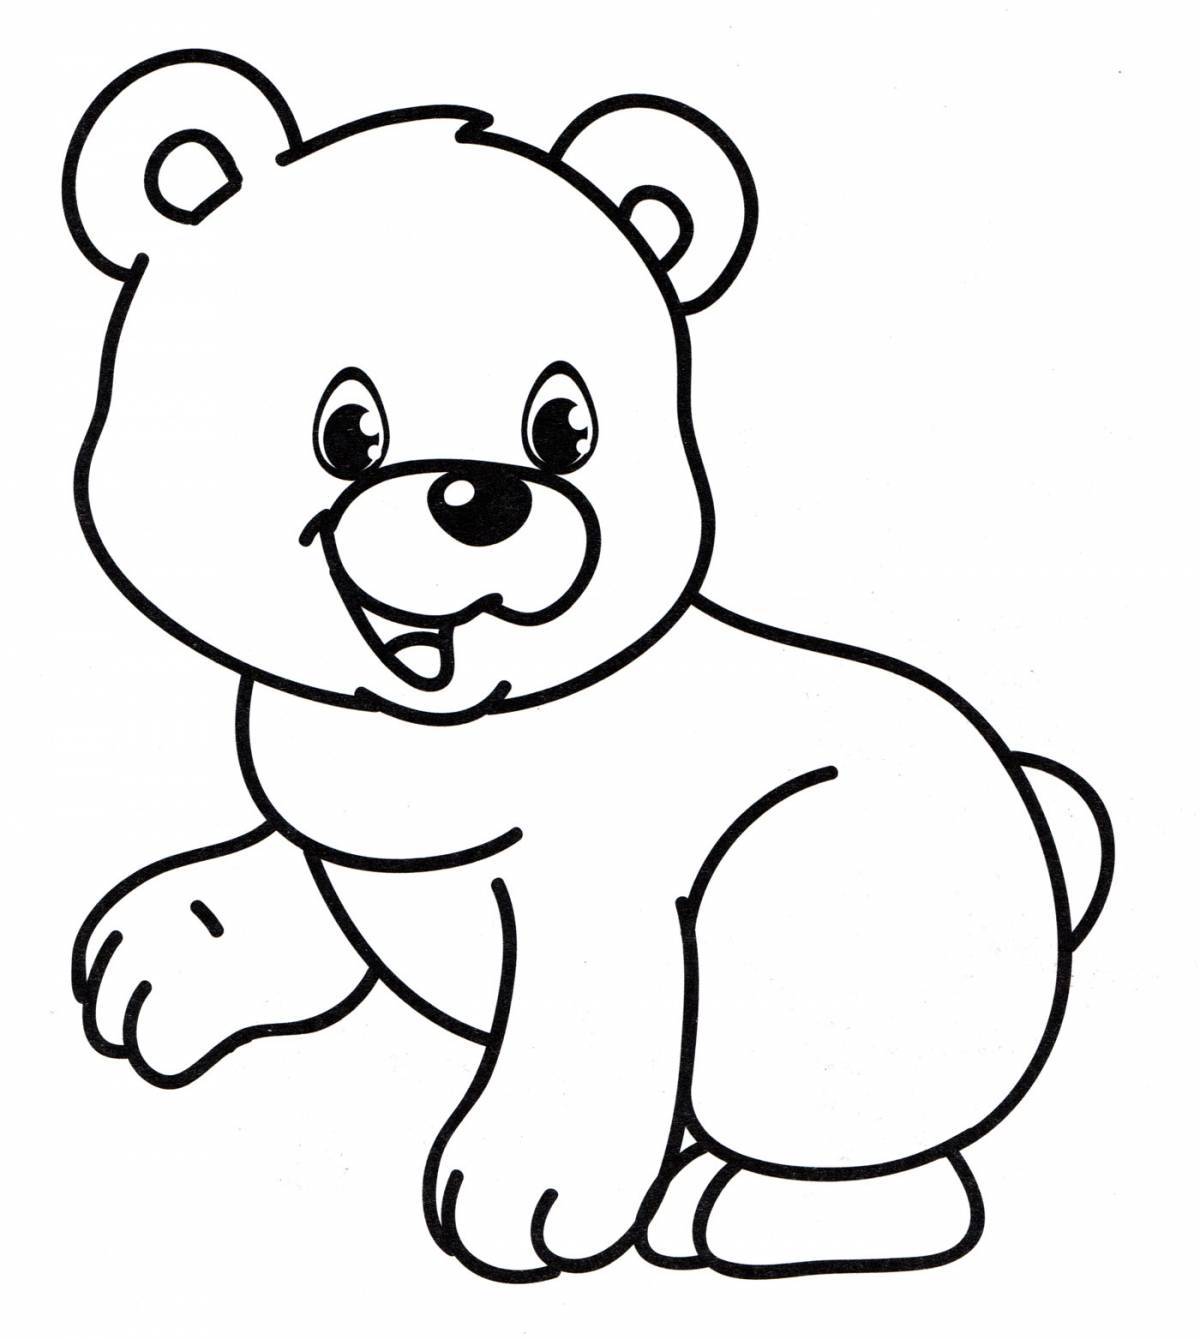 Цветная раскраска медведь для детей 3-4 лет